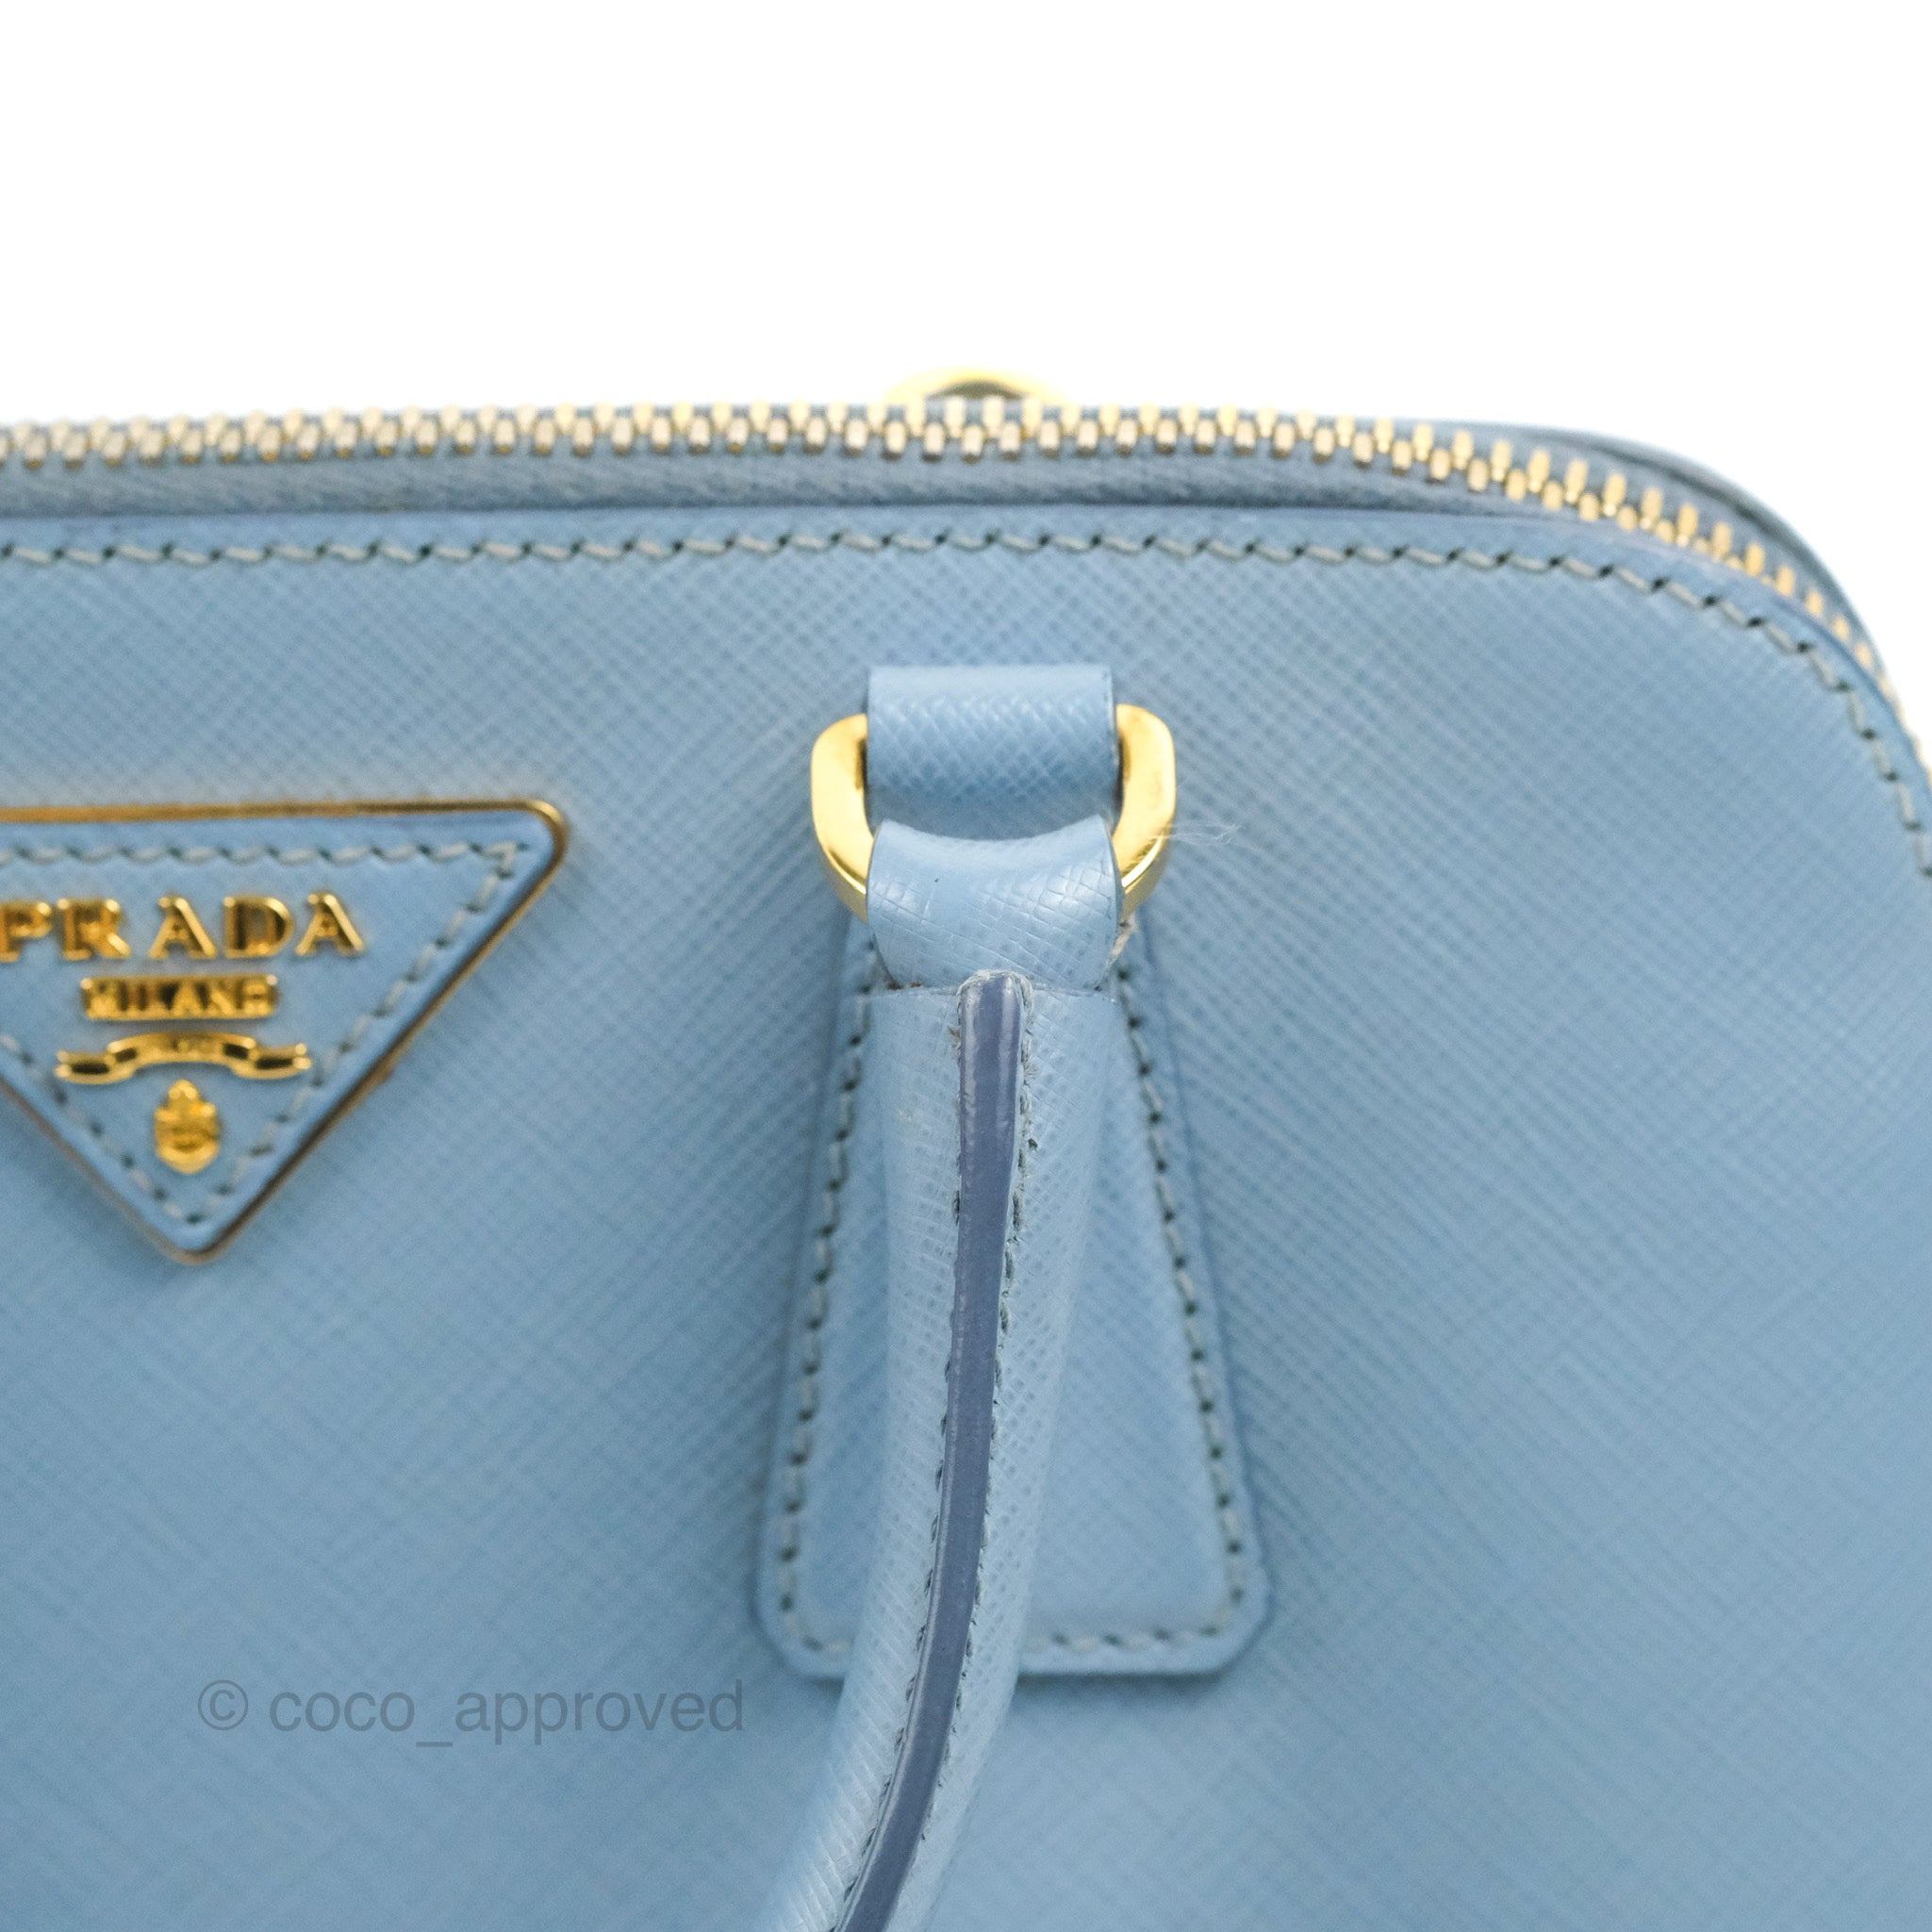 Prada Saffiano Lux Crossbody Bag